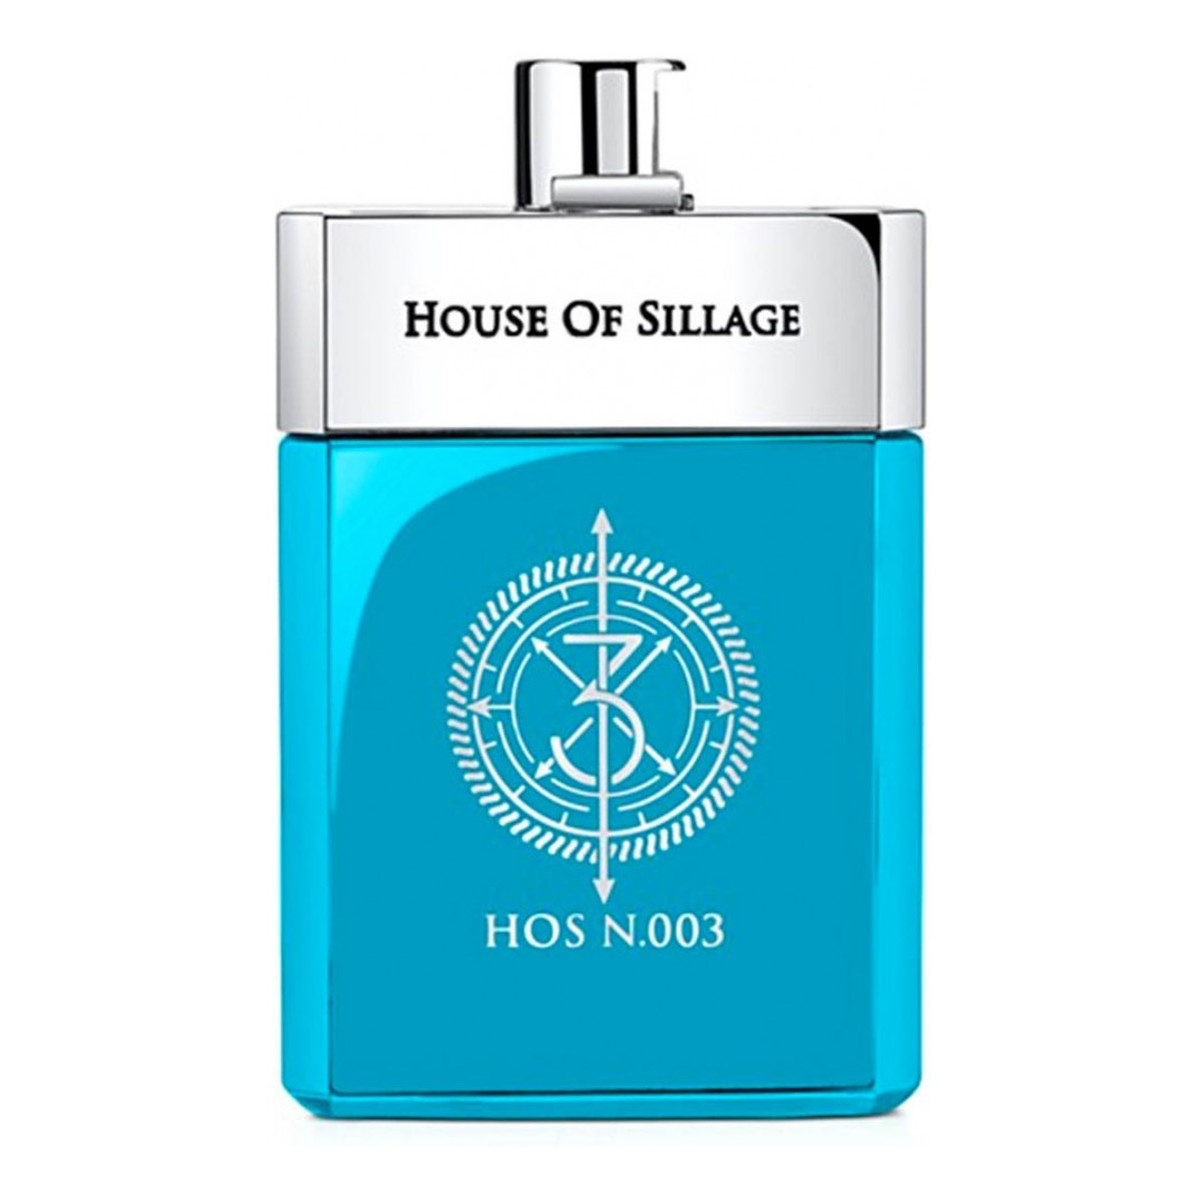 House of Sillage Hos N.003 Pour Homme woda perfumowana 75ml